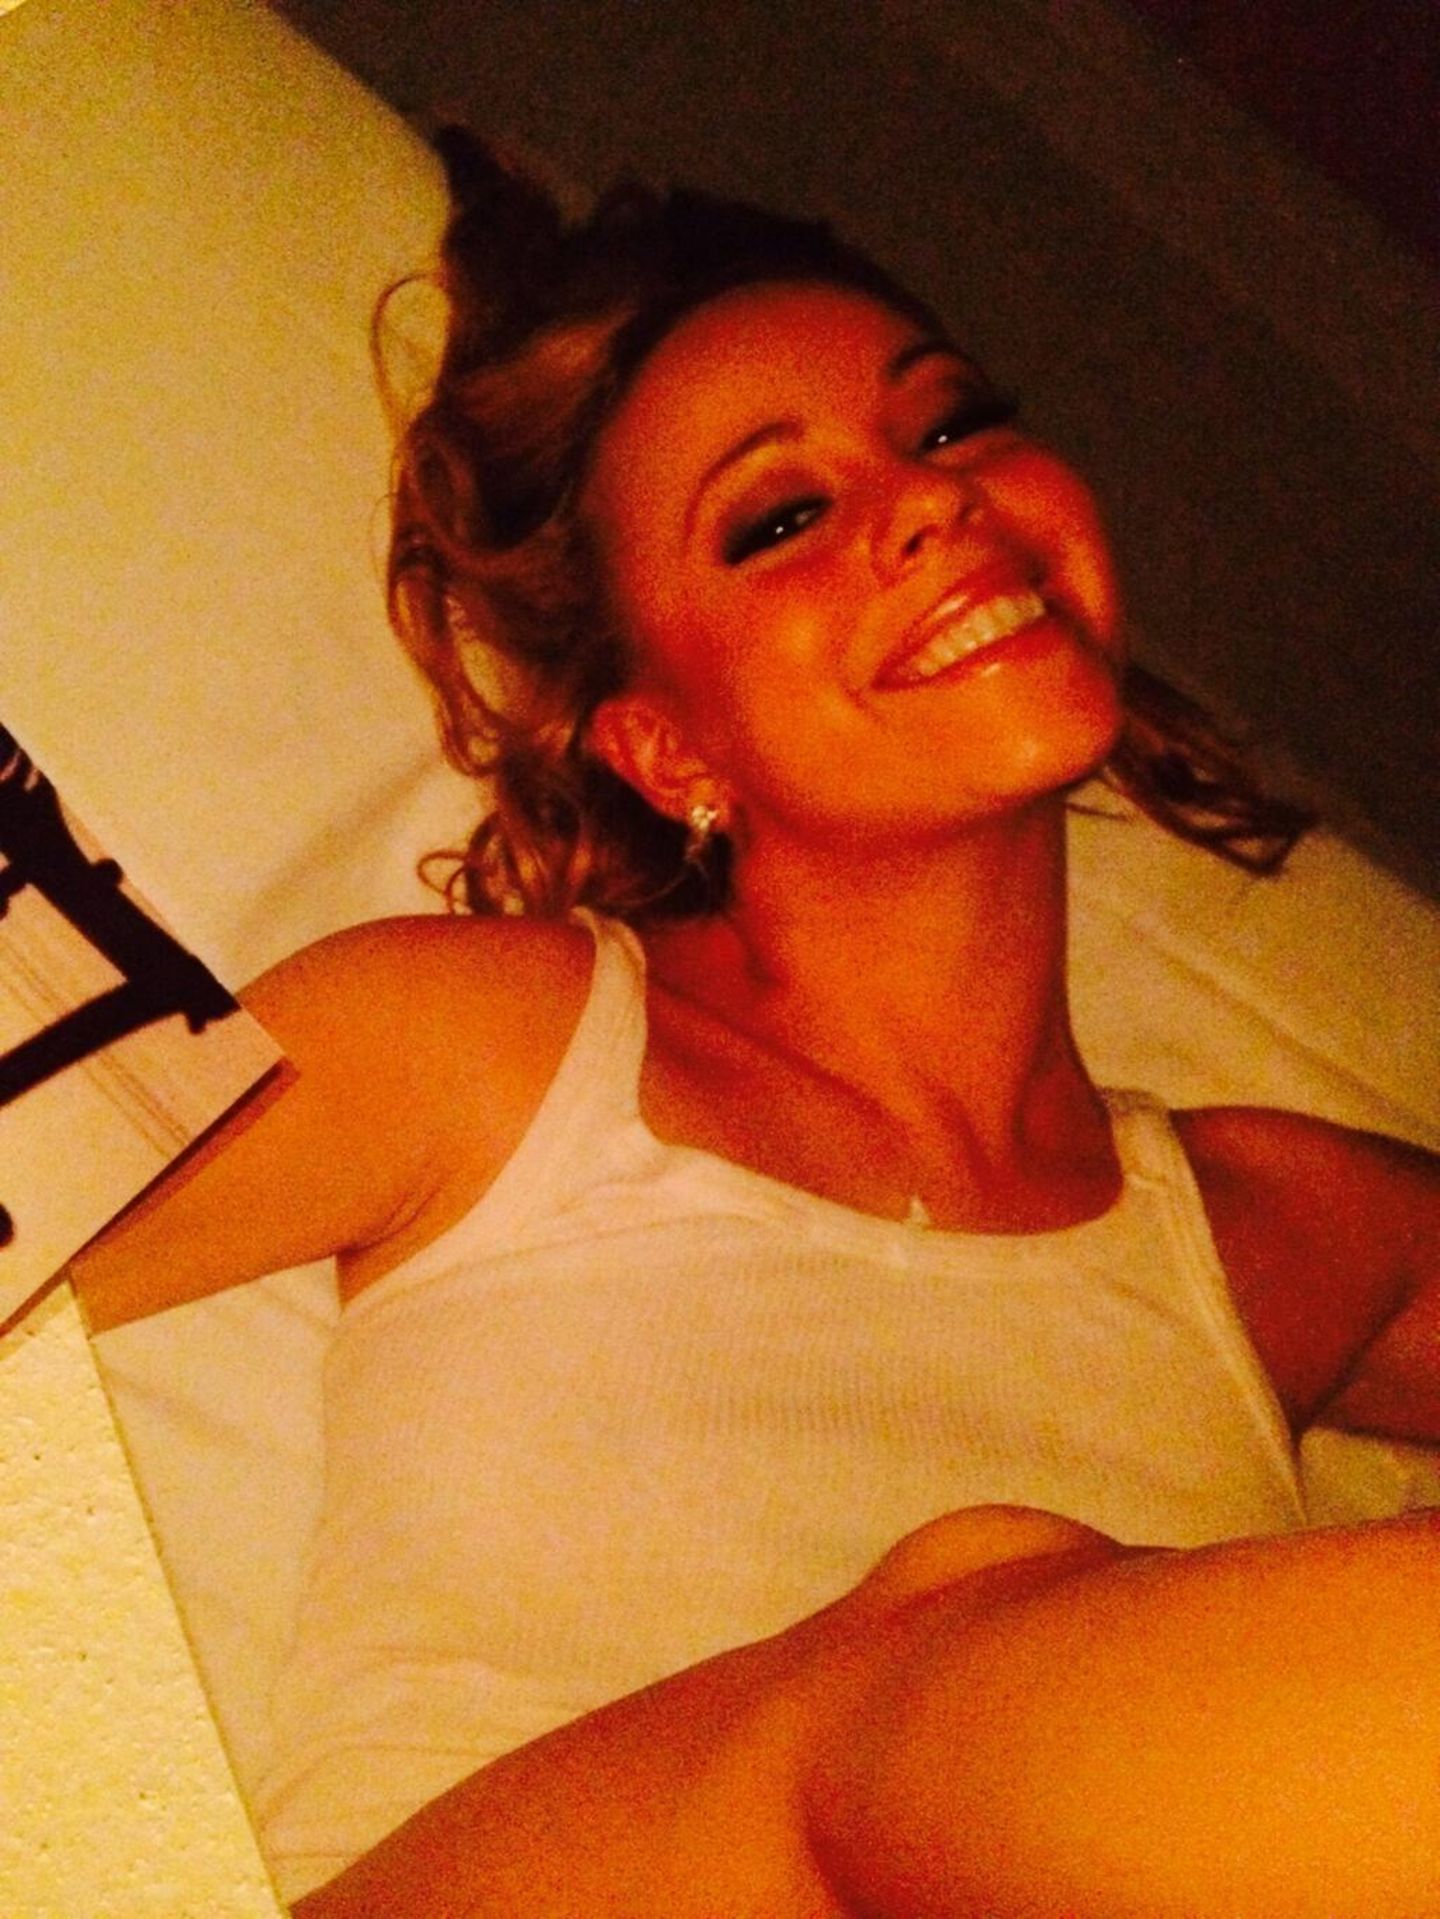 Zeitmaschine Twitter: Mitte Juni 2014 postete Mariah Carey diesen Schnappschuss zusammen mit weiteren Fotos ihrer Kinder. Dazu schrieb sie: "Schöne Moment mit #dembabies...so viel Glück!!" Peinlich nur, dass die Aufnahme von Carey aus dem Jahr 1997 stammt. Da flunkerte die 40-Jährige vor ihren 15 Millionen Followern ganz schön mit dem Alter. Dass sie glaubte, damit durchzukommen, ist ja der eigentliche Skandal.